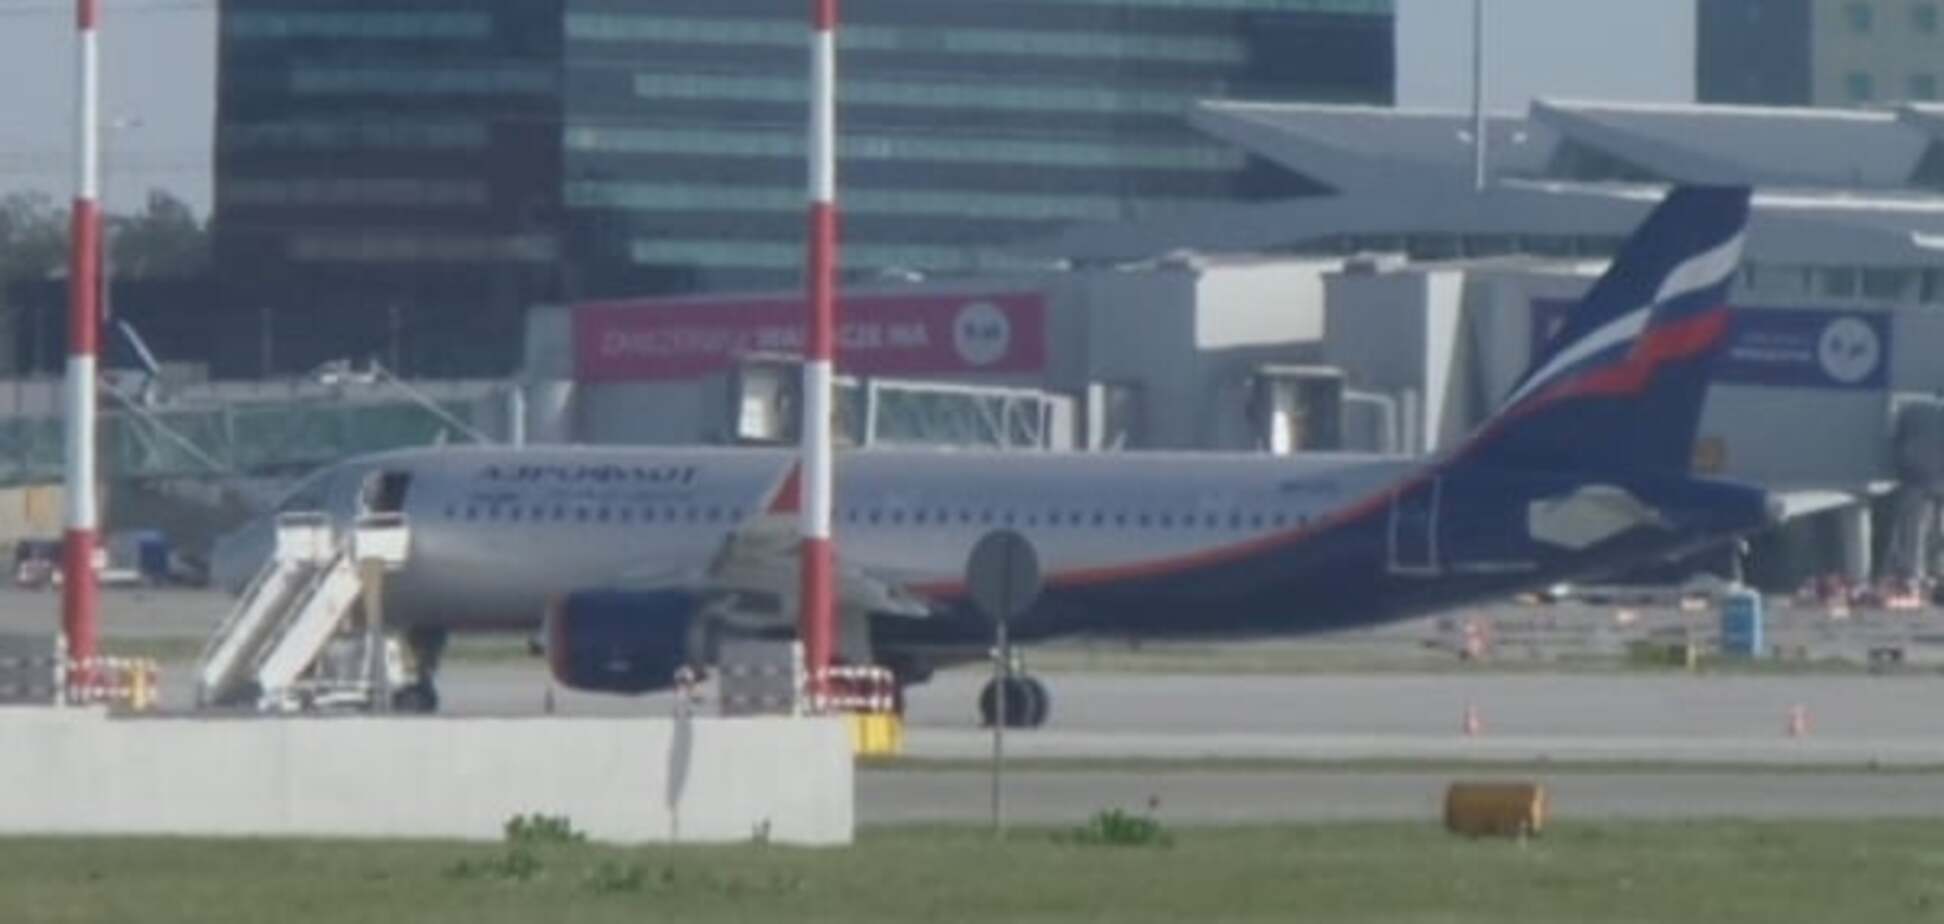 О пассажирах забыли: в Варшаве российский авиалайнер столкнулся с польским самолетом